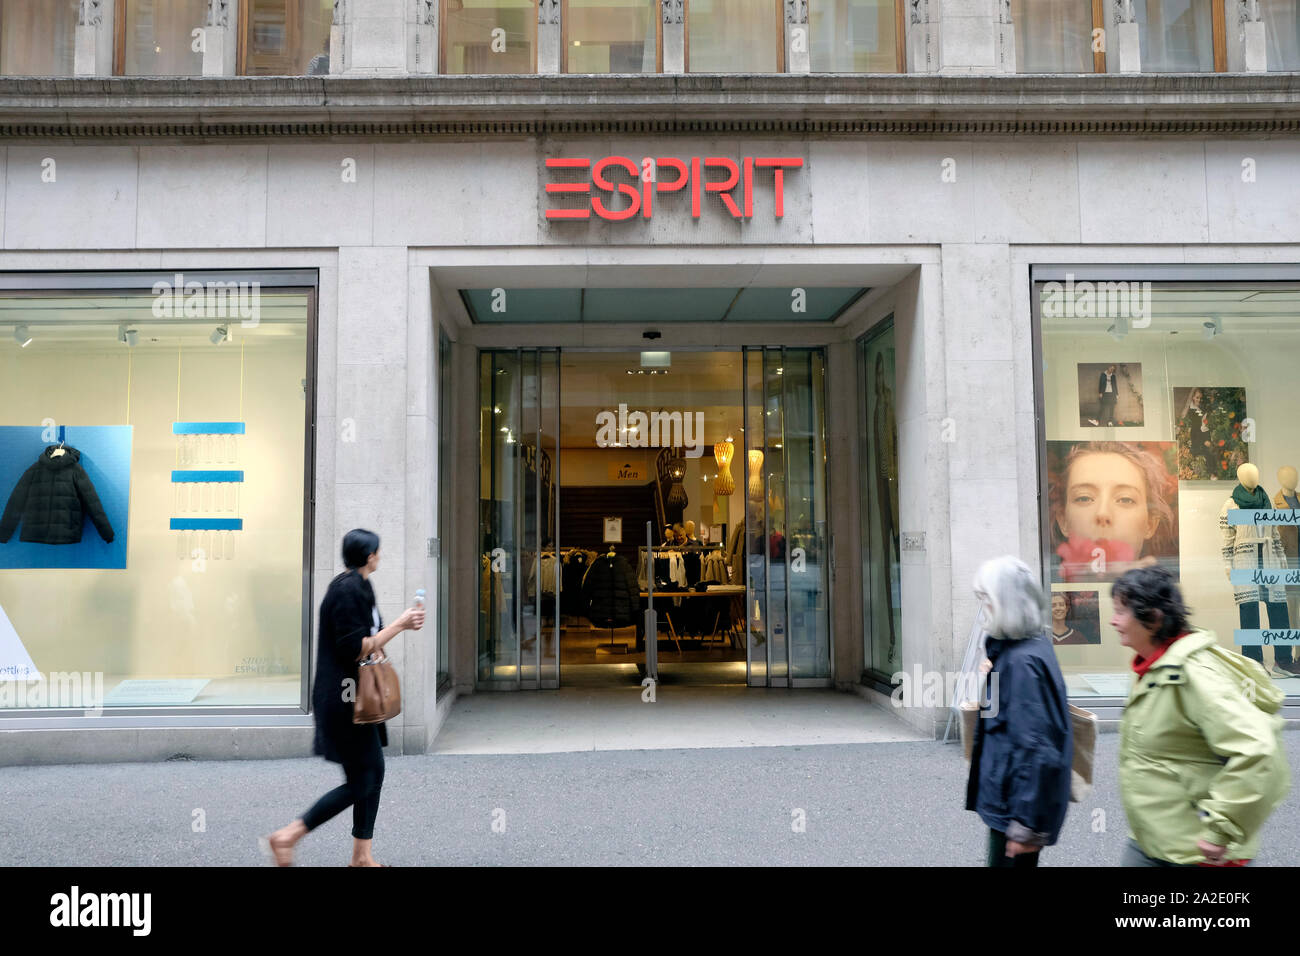 Vue d'esprit fashion store à Bâle, Suisse Banque D'Images